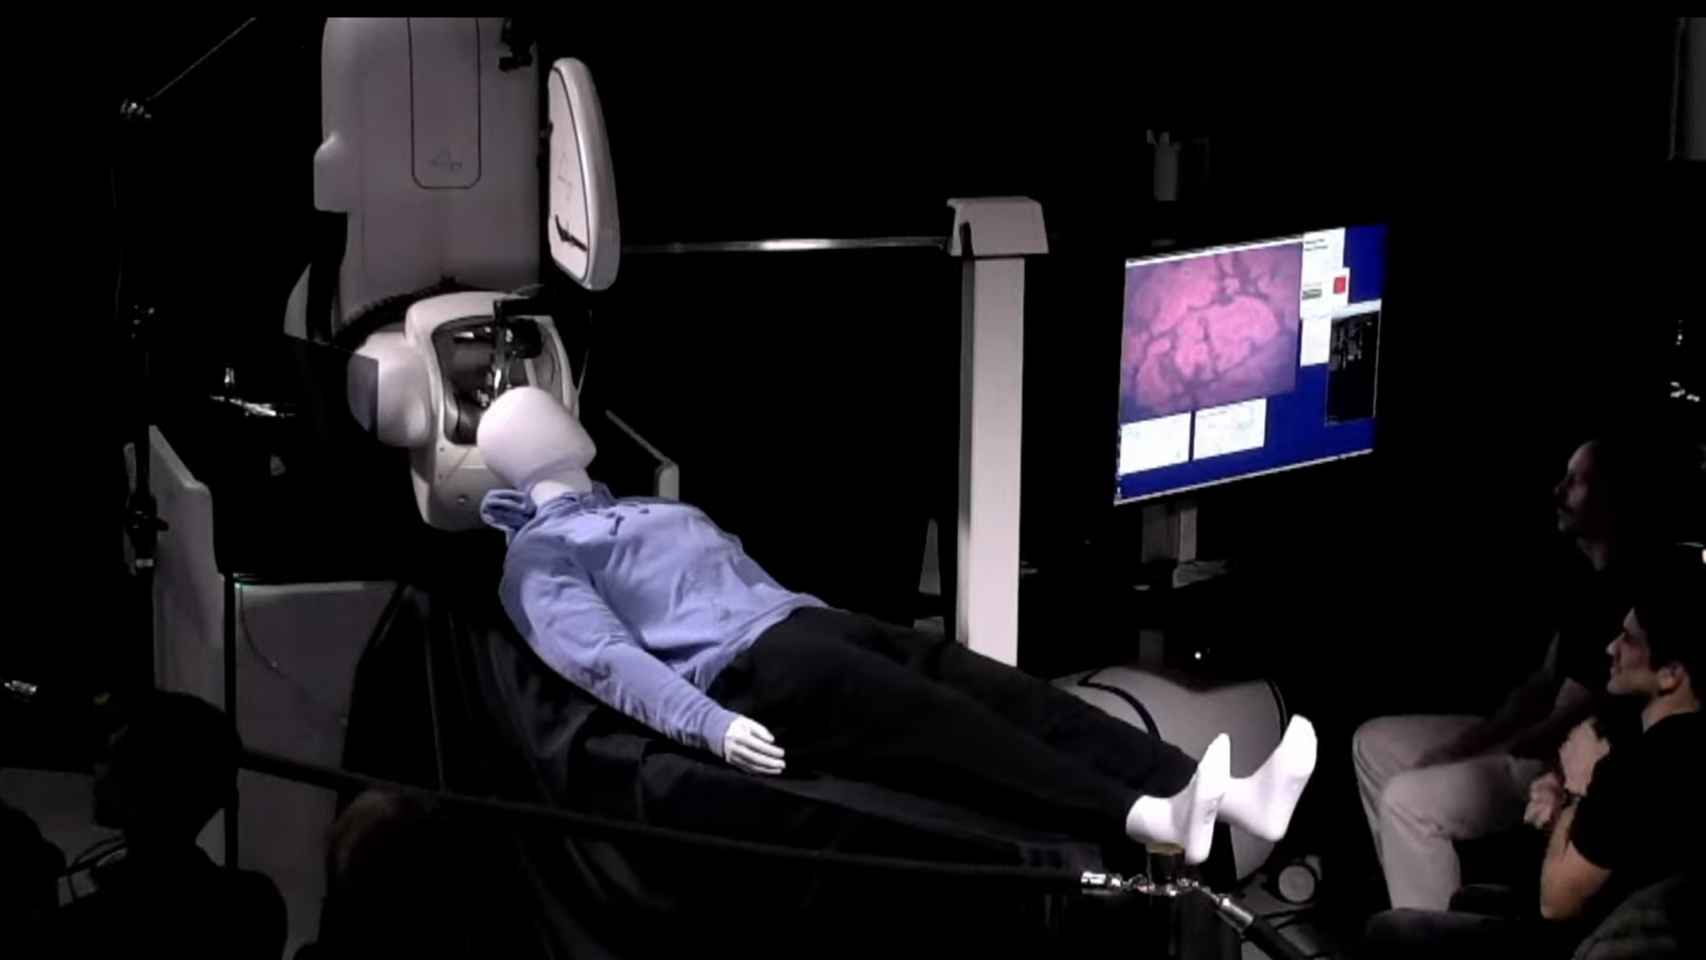 El robot simulando la operación en un maniquí.